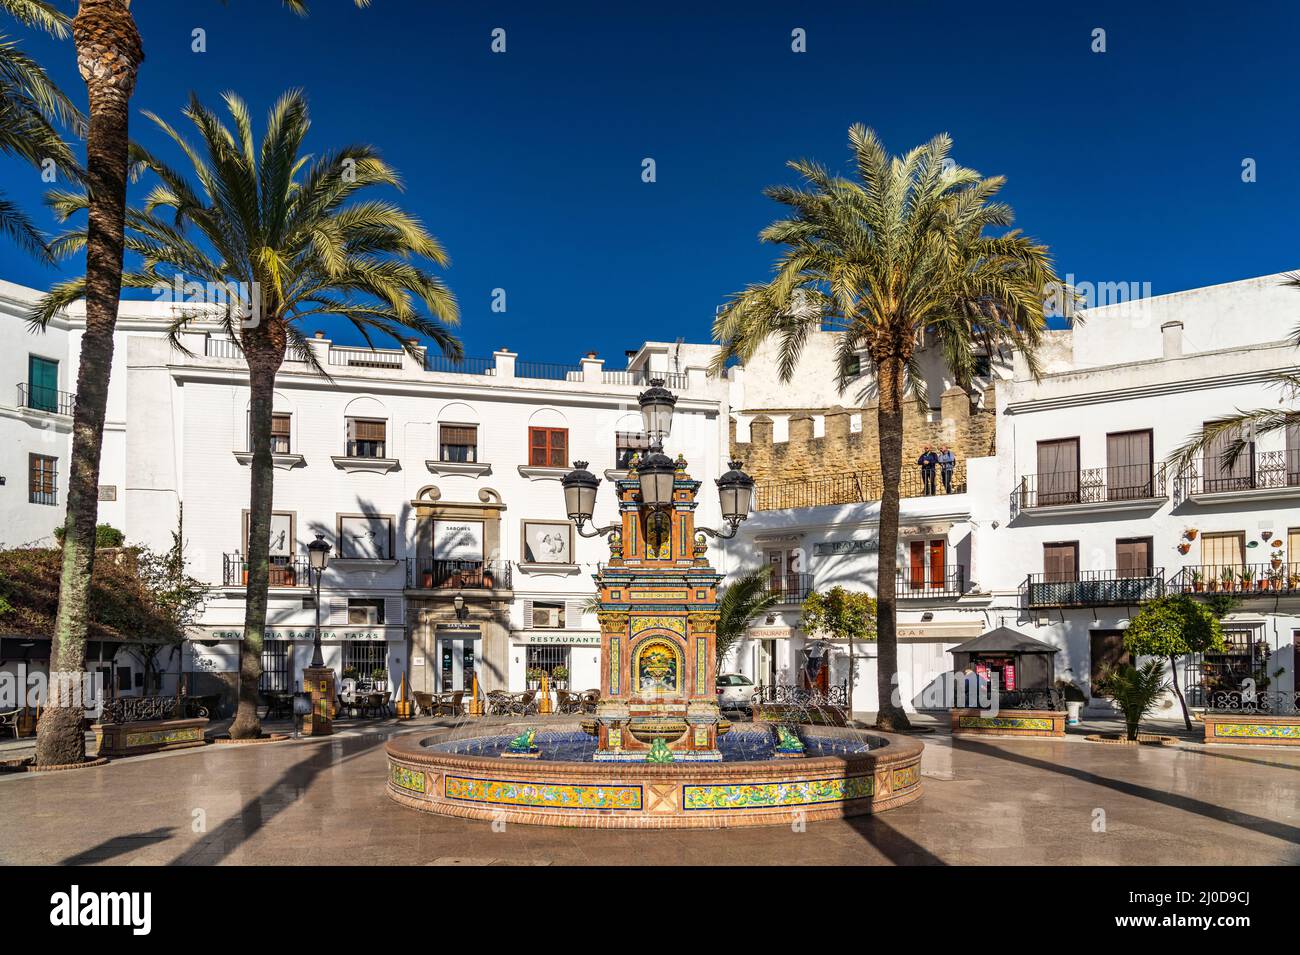 Brunnen und weiße Häuser am Platz Plaza España, Vejer de la Frontera, Andalusien, Spanien | Brunnen und weiße Häuser am Platz Plaza España, Vejer Stockfoto